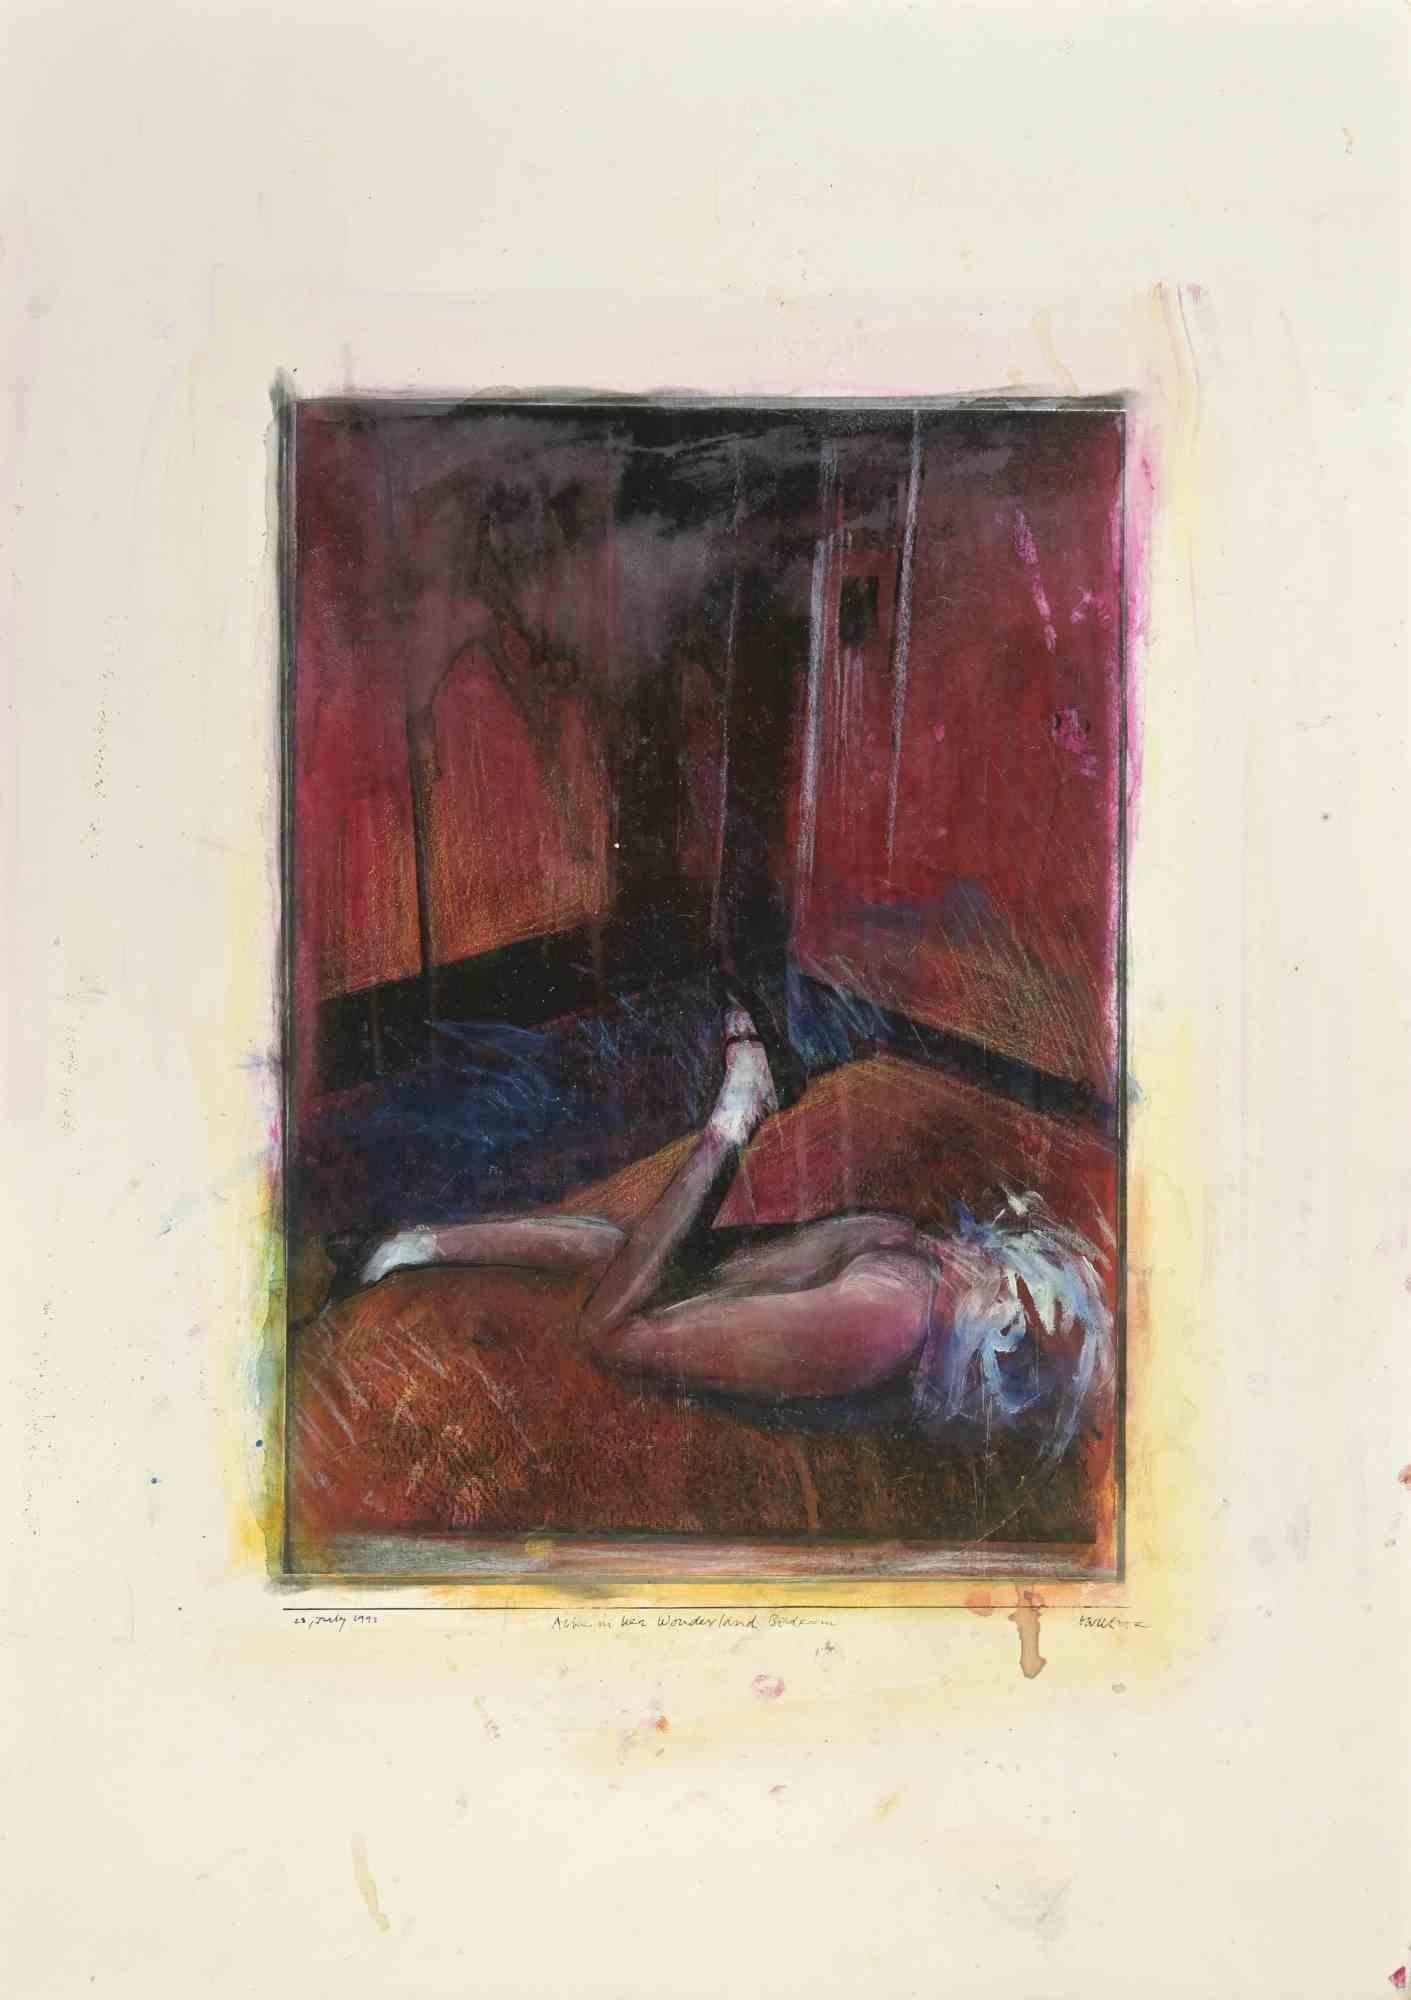 Alice im Wunderland-Schlafzimmer ist ein  Gemälde, das 1992 von Sergio Barletta geschaffen wurde.

Tempera und Bleiweiß auf Karton.

Handsigniert, betitelt und datiert am unteren Rand

Guter Zustand mit Stockflecken.

Sergio Barletta (1934) ist ein